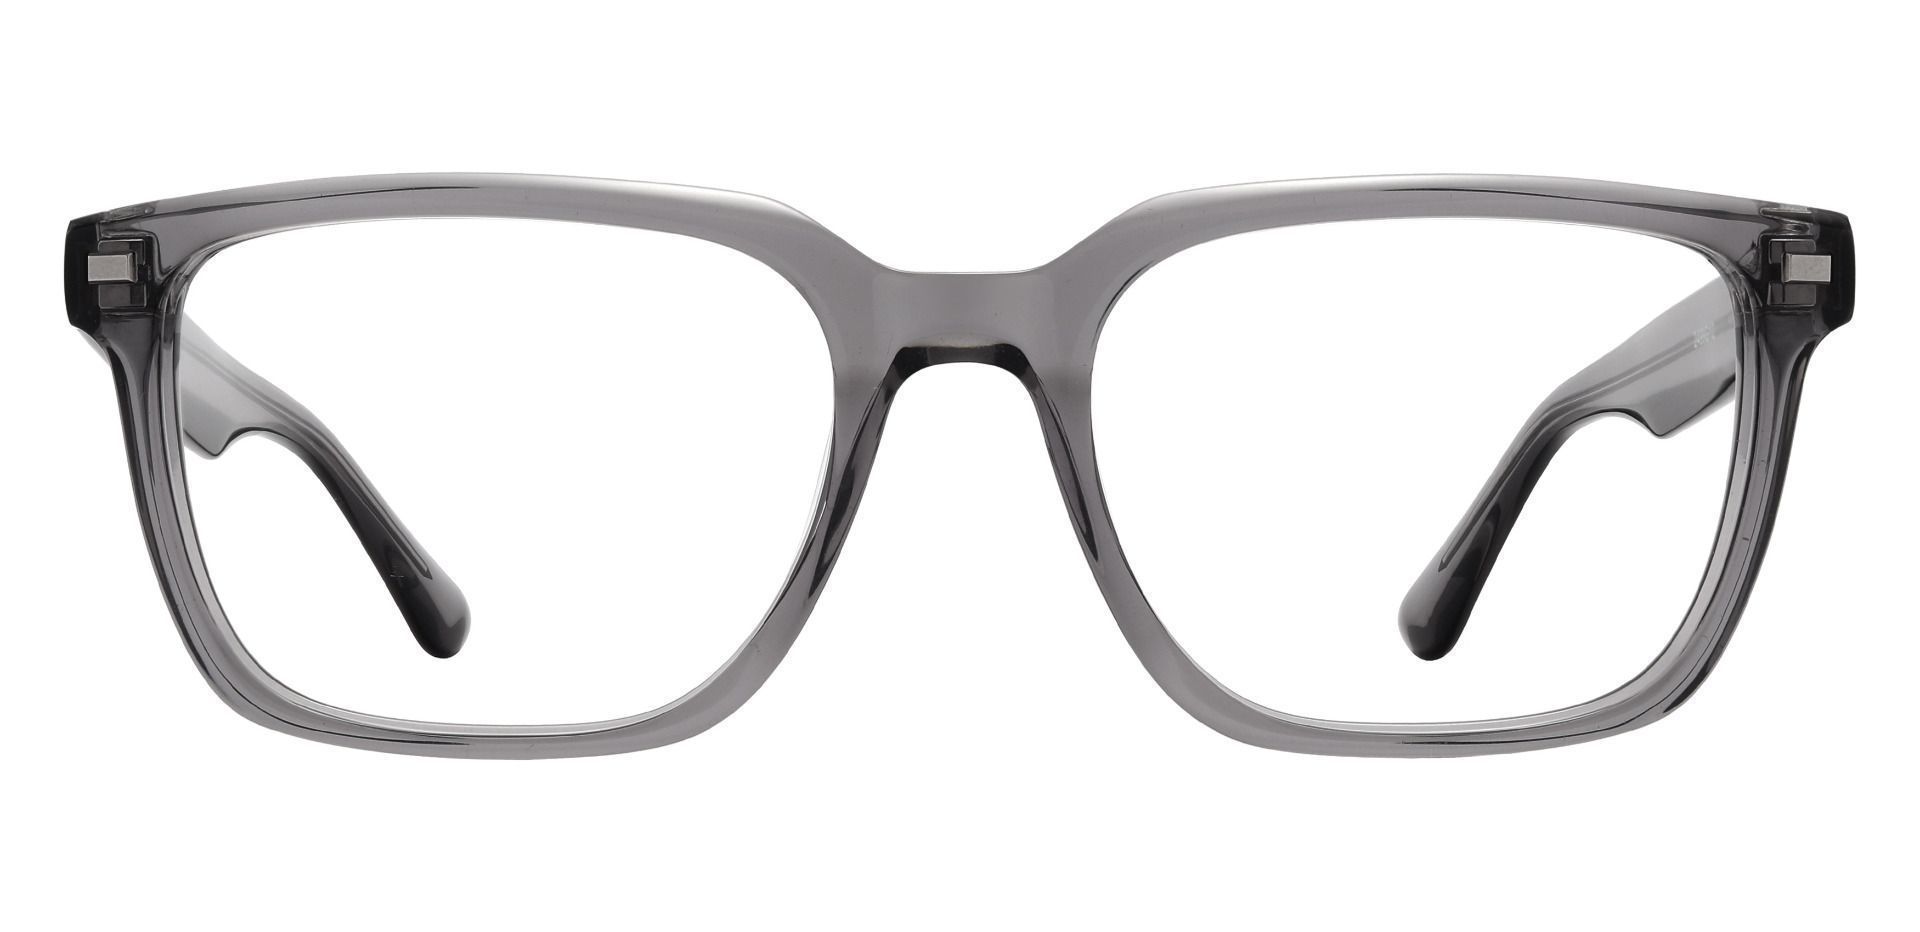 Monte Rectangle Prescription Glasses - Gray